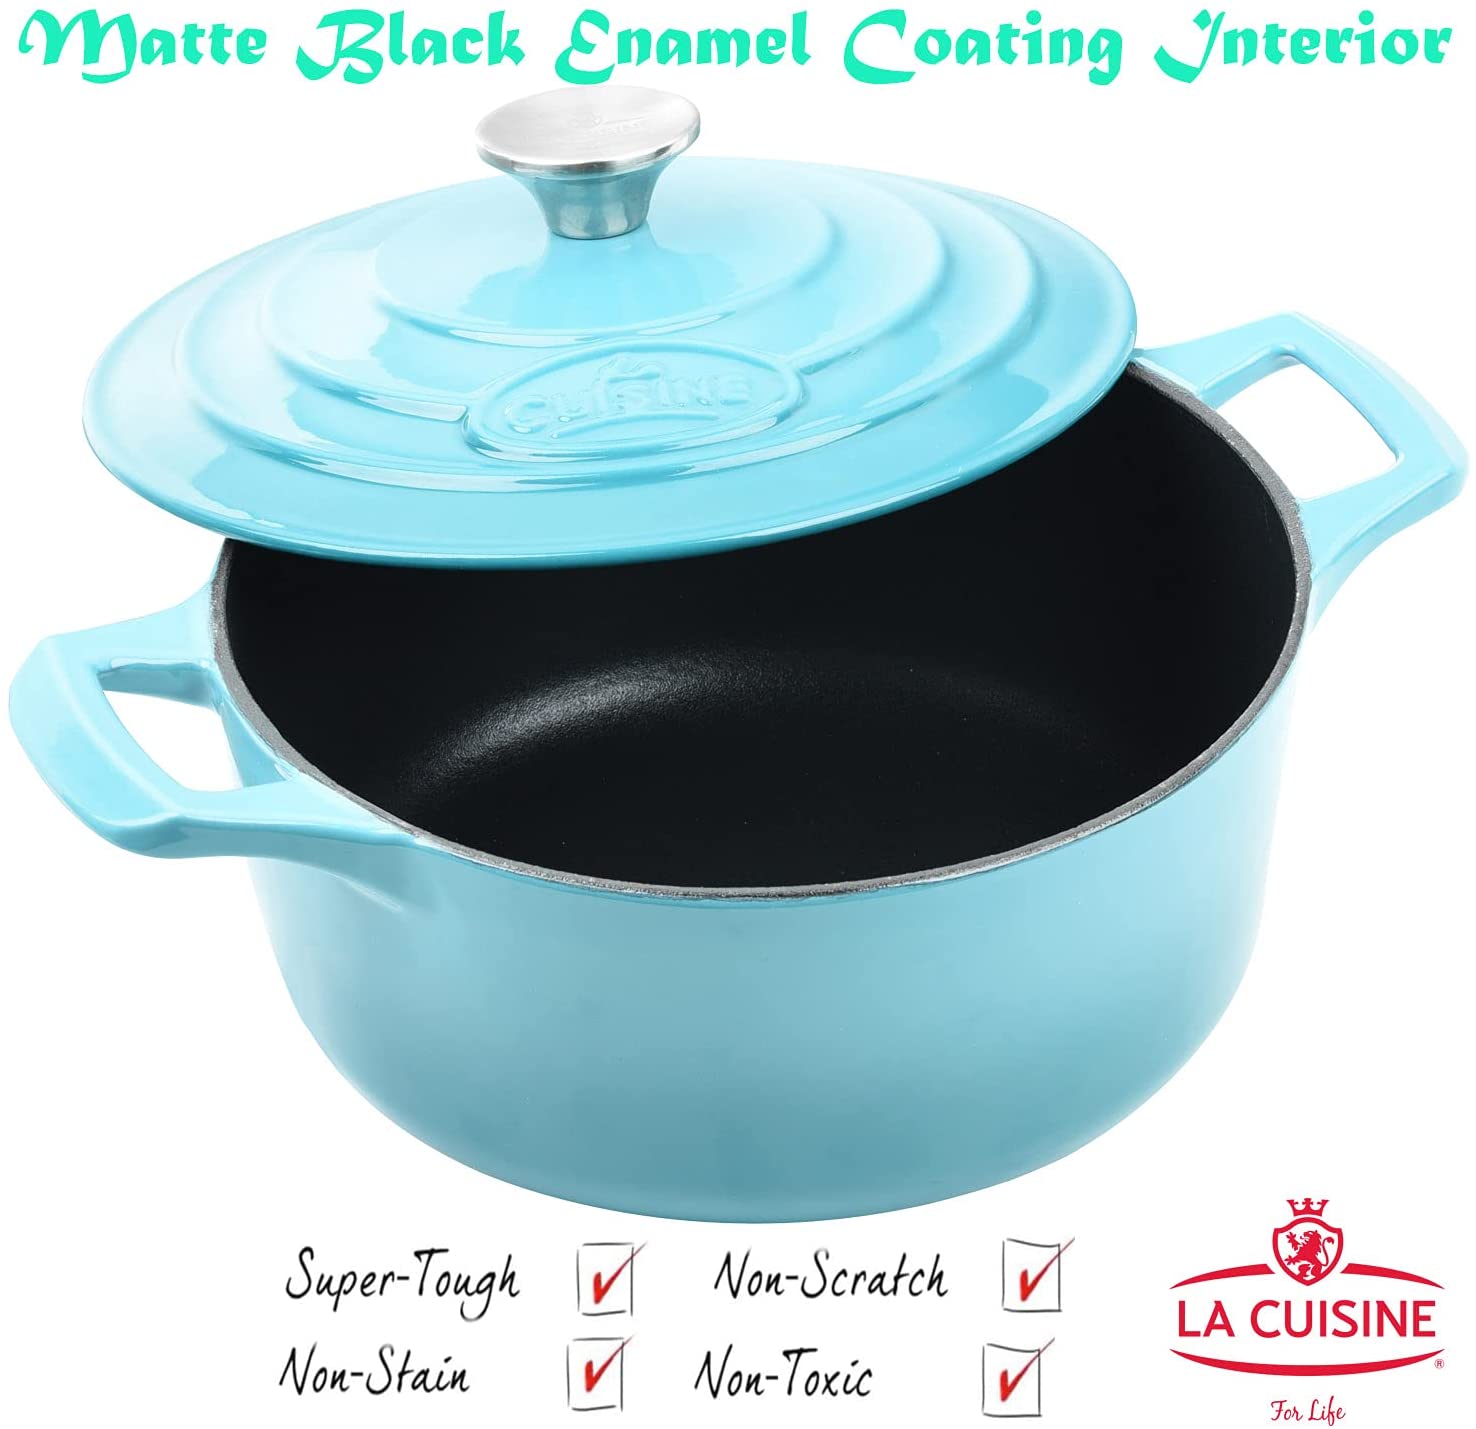  La Cuisine Enameled Cast Iron Dutch Oven Casserole Dish Pot  with Lid, 2.1 QT 7.8 Inches Dia. Matte Black Enamel Interior, Cranberry  Porcelain Enamel Exterior Oven-Safe: Home & Kitchen